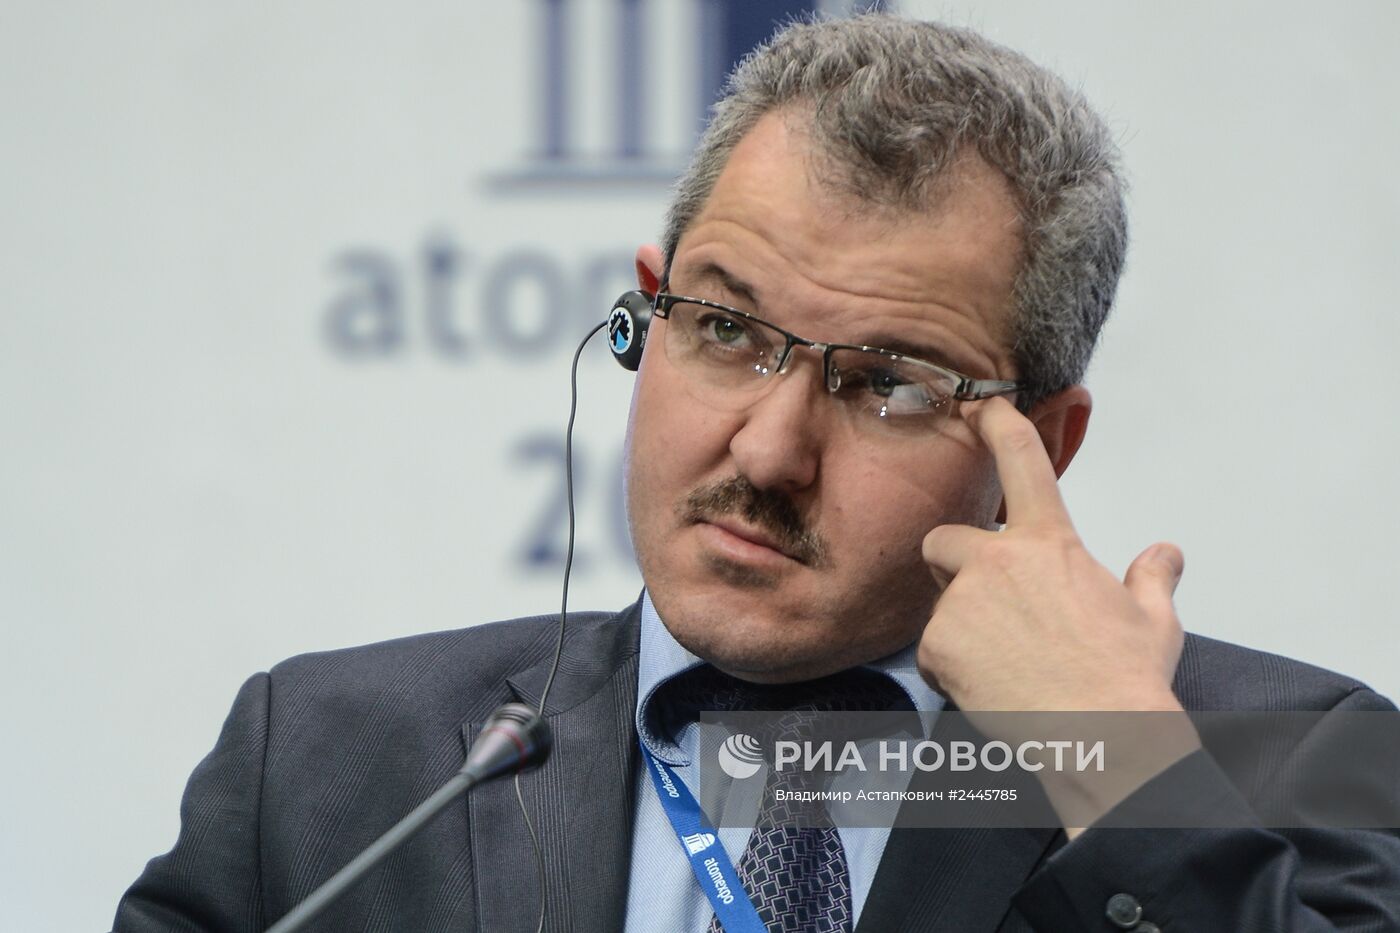 VI Международный форум "Атомэкспо-2014" в Москве